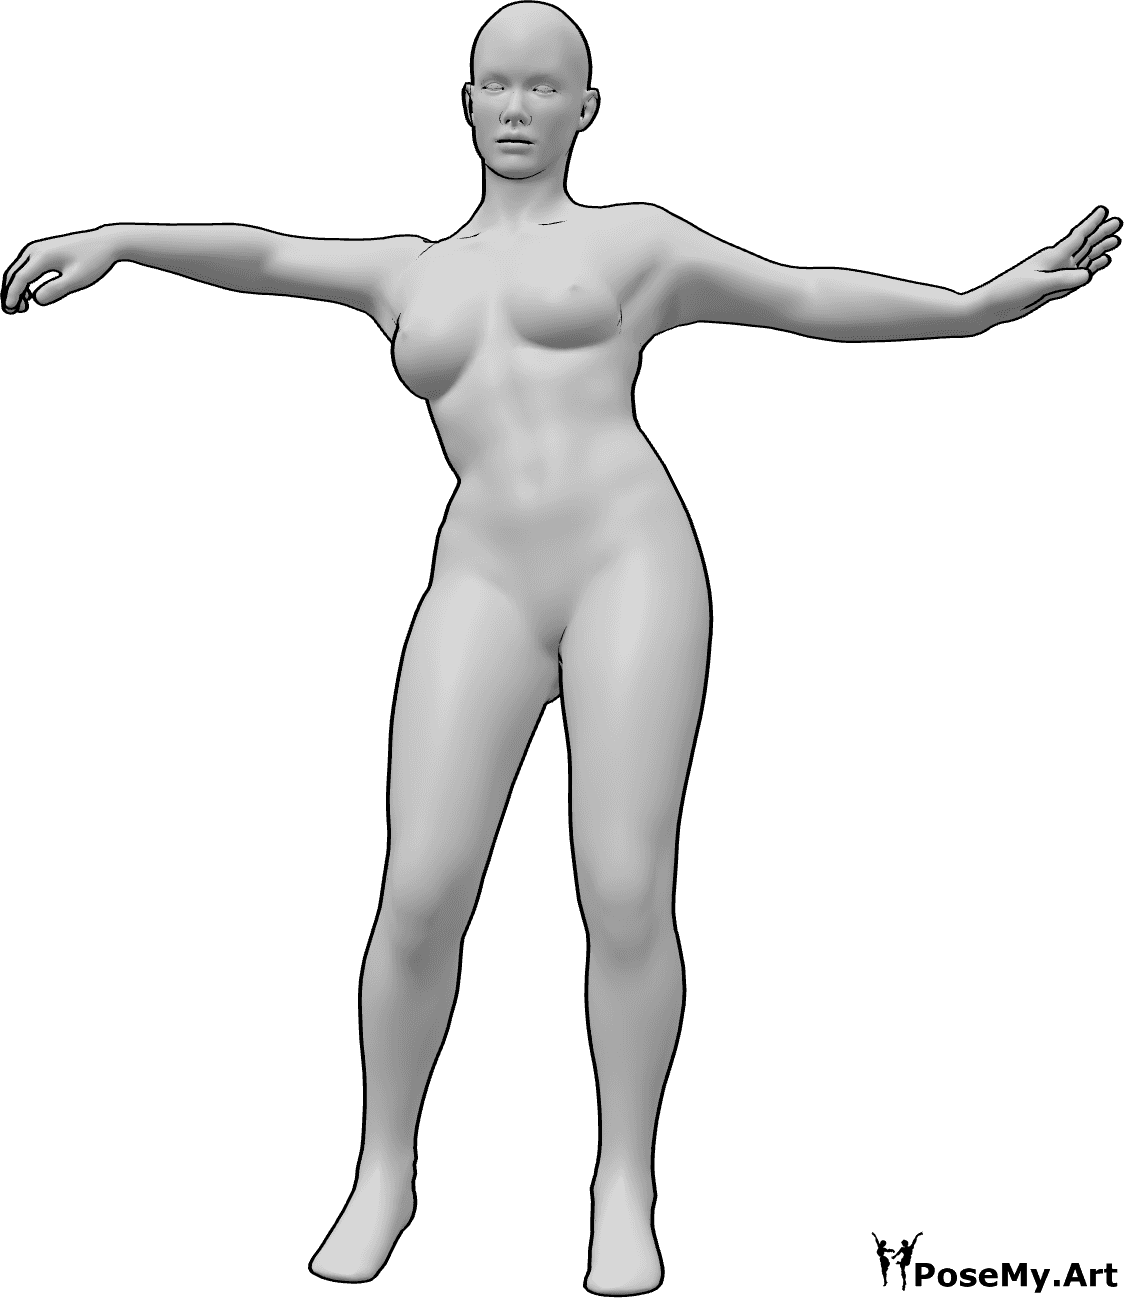 Referência de poses- Pose de dança feminina - A mulher está de pé, a dançar com as mãos e a olhar para a frente